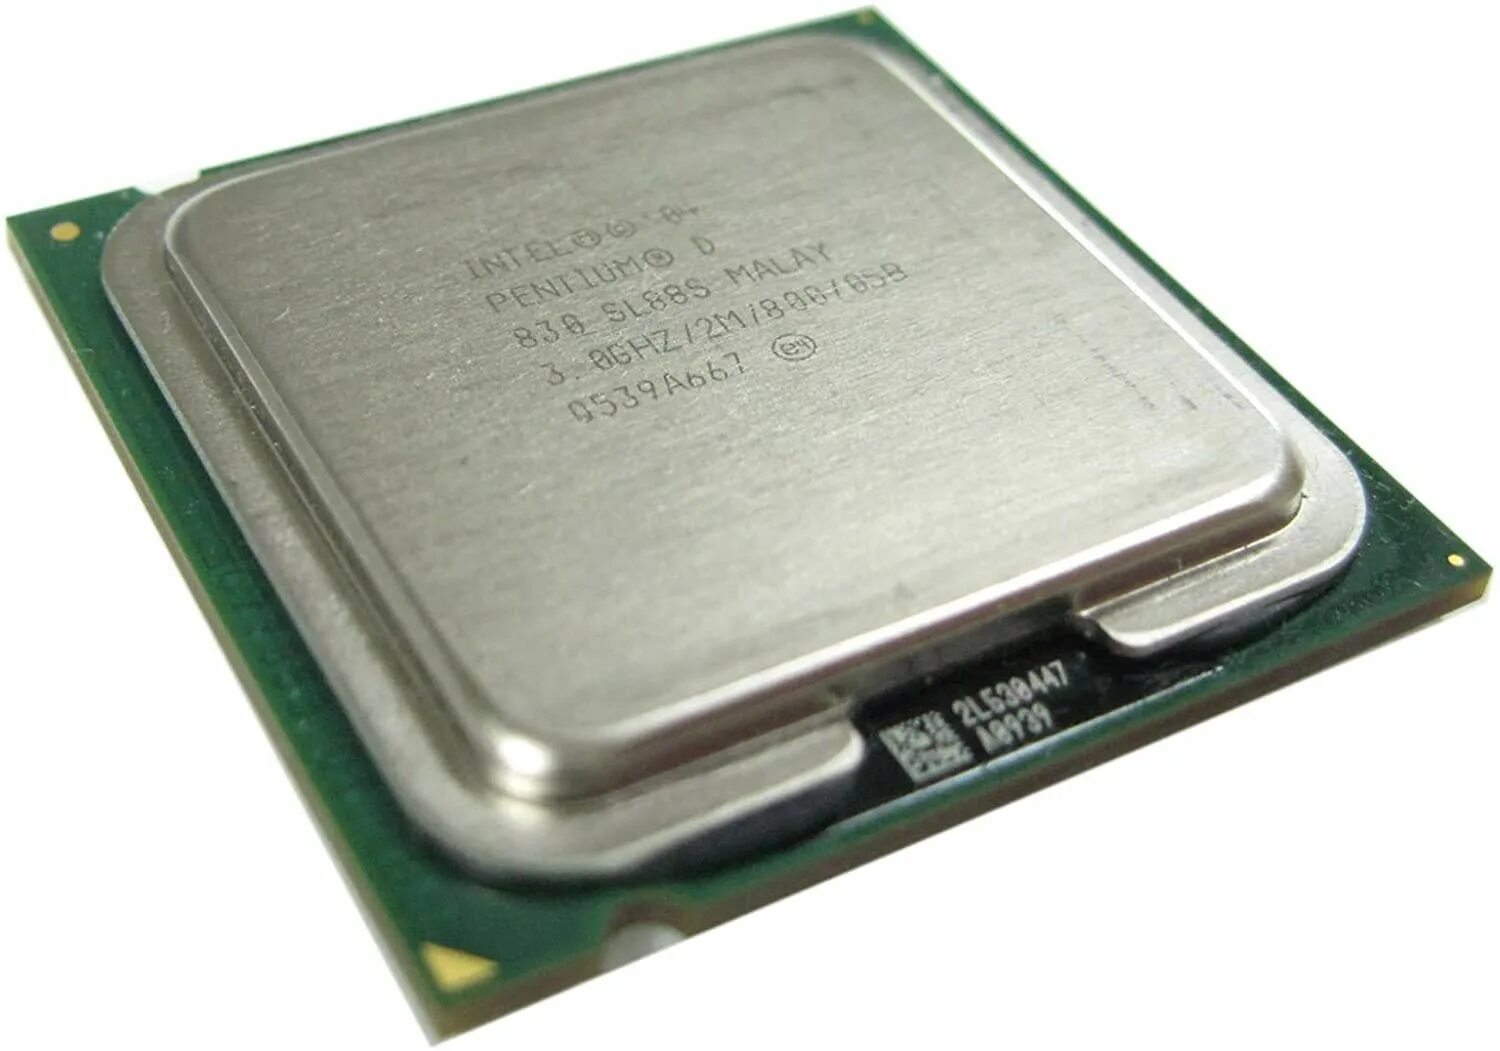 Pentium какой сокет. Процессор Intel Pentium d 830. Процессор Intel Core 2 Duo mobile t7300 Merom. Процессор Intel Xeon e5-2680 Sandy Bridge-Ep. Процессор: Intel Pentium d 830 @ 3.00GHZ; AMD Athlon 64 x2 Dual Core 3600+.